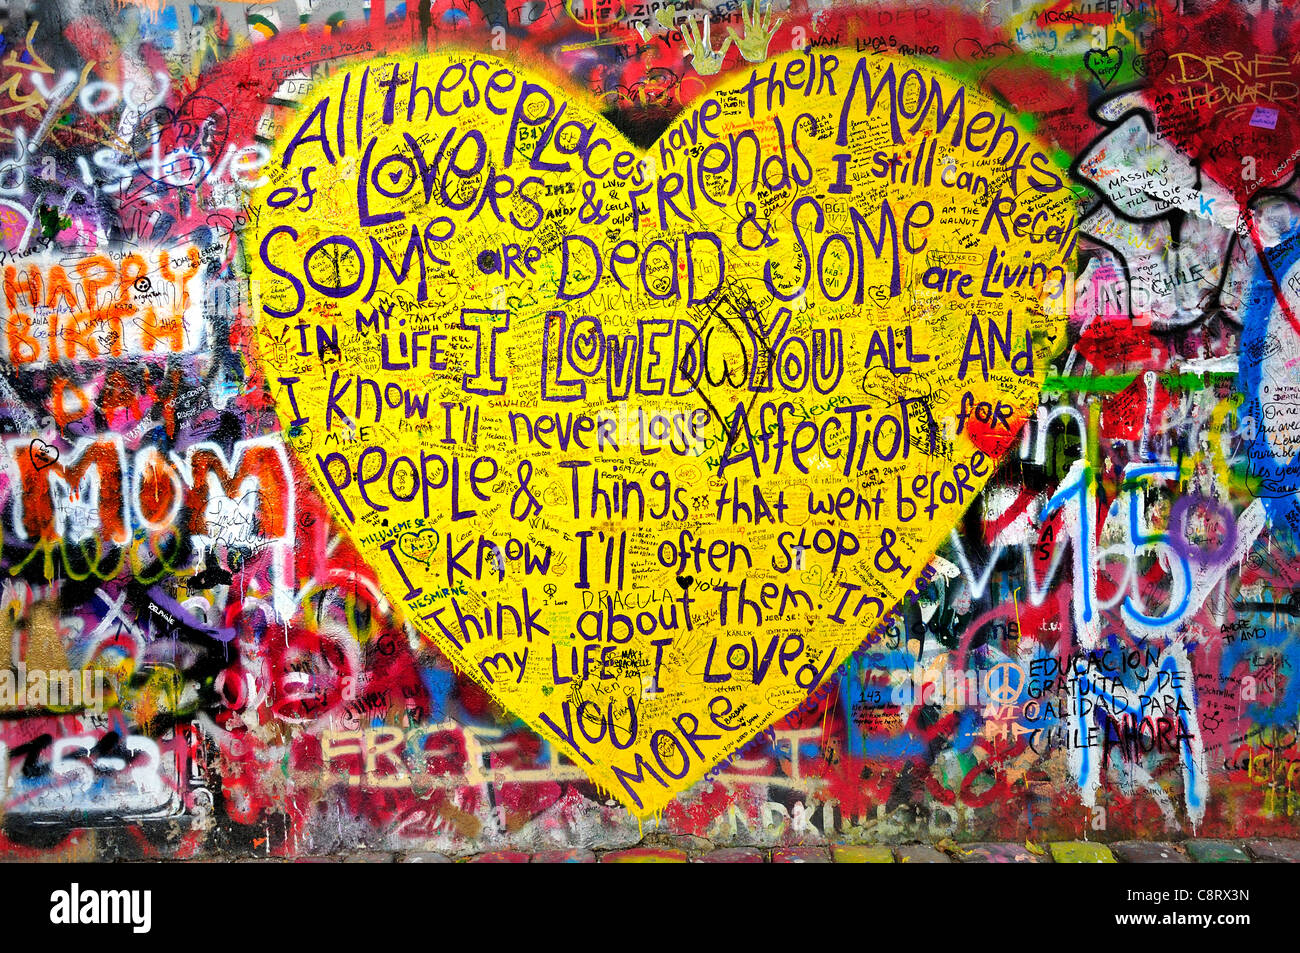 Prague, République tchèque. Mala Strana. John Lennon Wall en Velkoprevorske namesti (place) Paroles de la chanson des Beatles "Dans ma vie" Banque D'Images